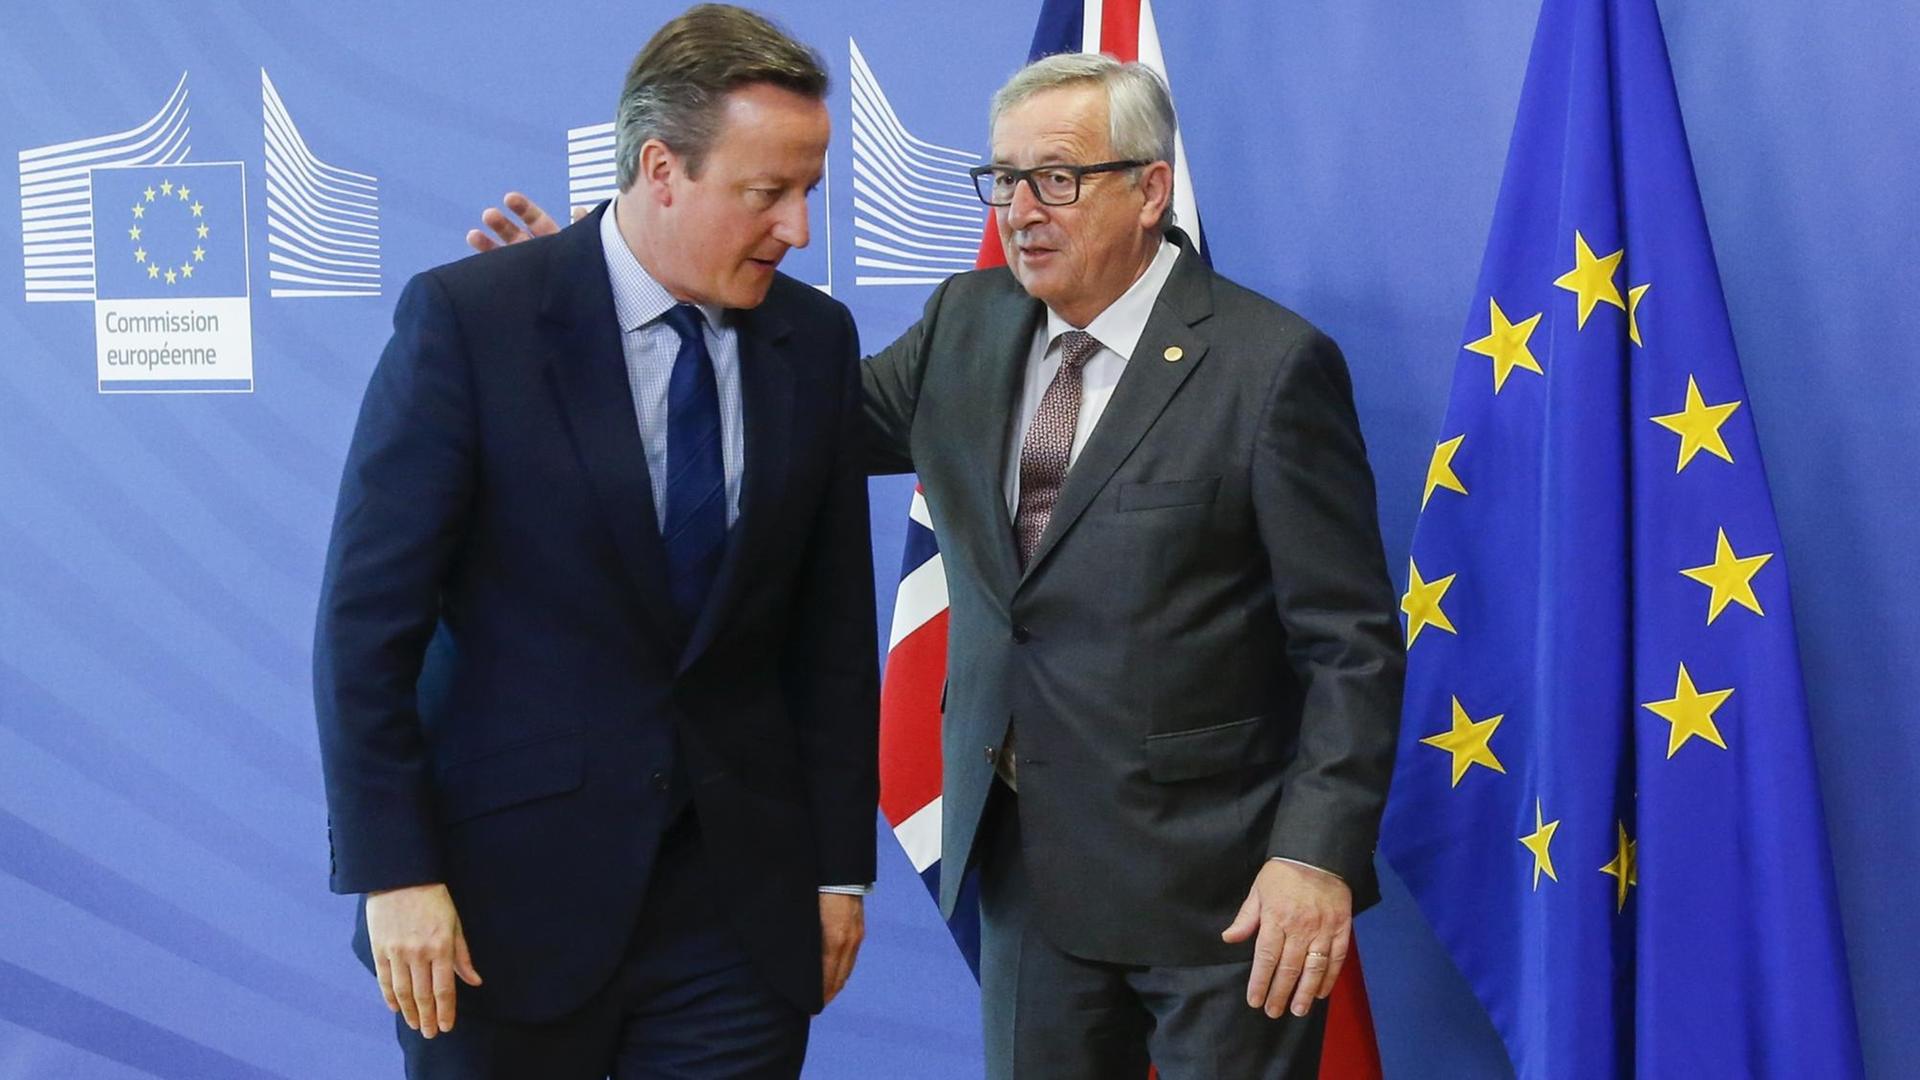 Jean-Claude Juncker klopft David Cameron vor einer EU-Flagge auf den Rücken